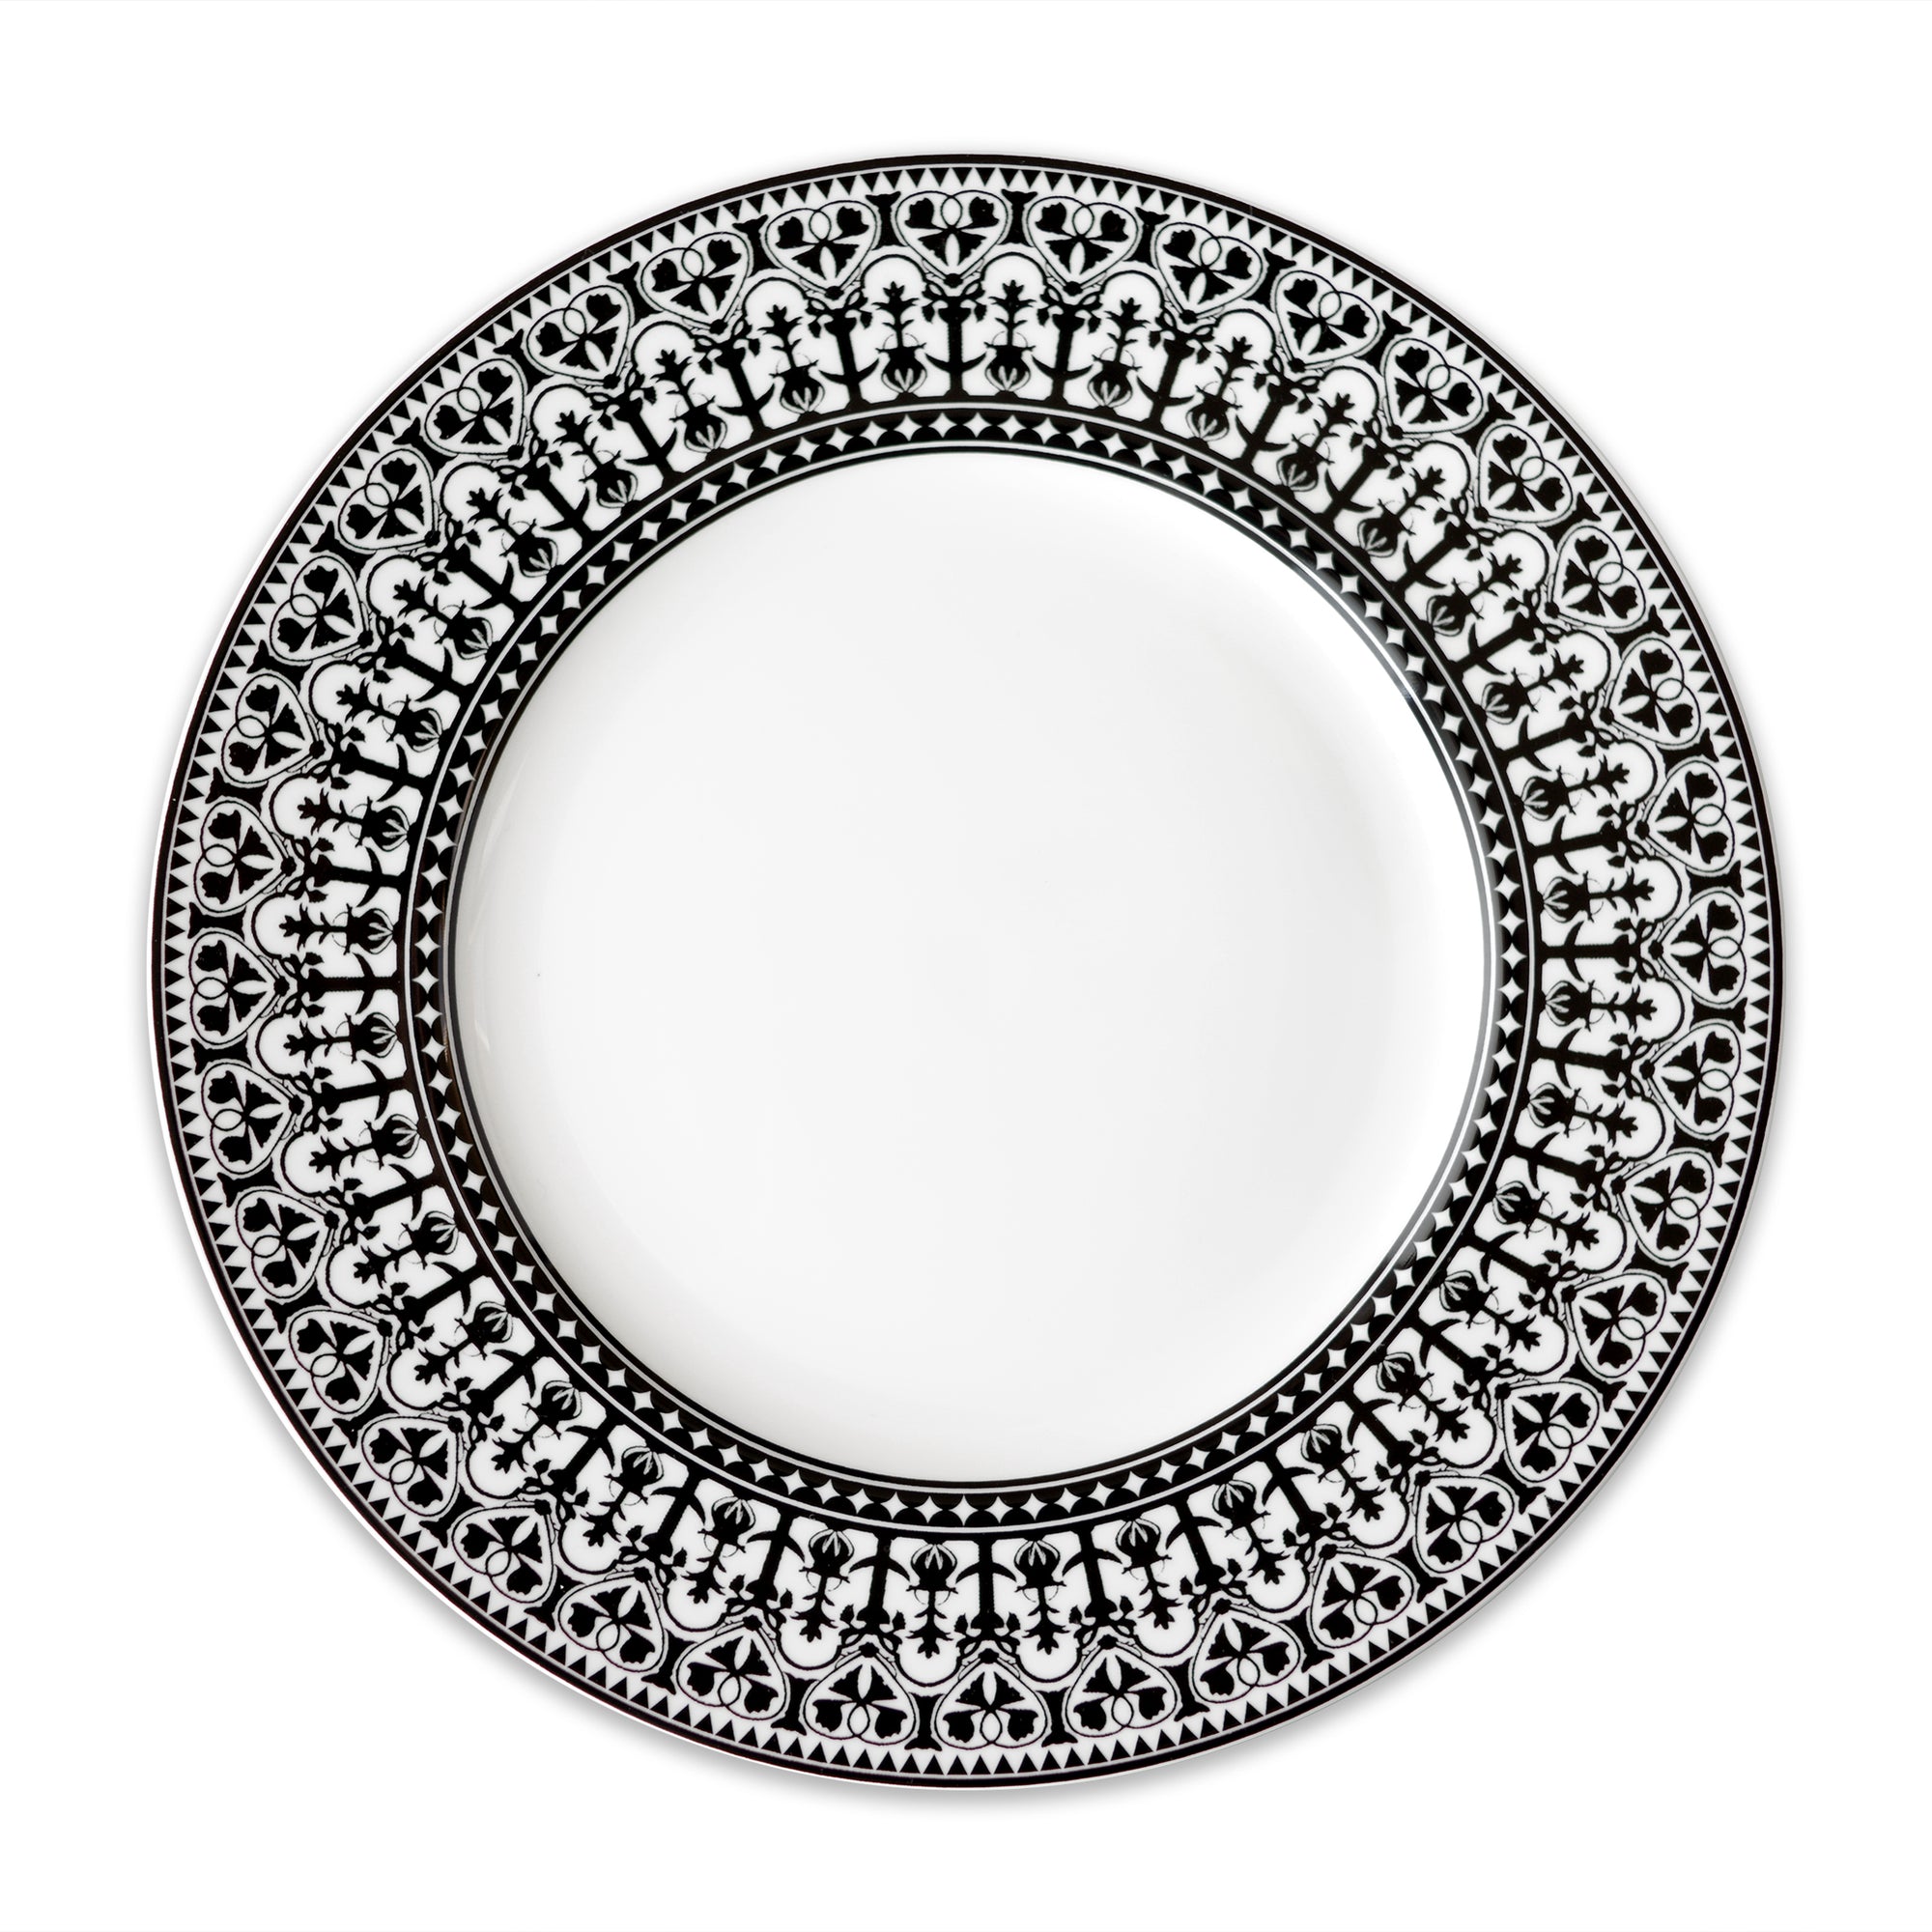 Casablanca Dinner Plate in black and white high-fired porcelain- Caskata